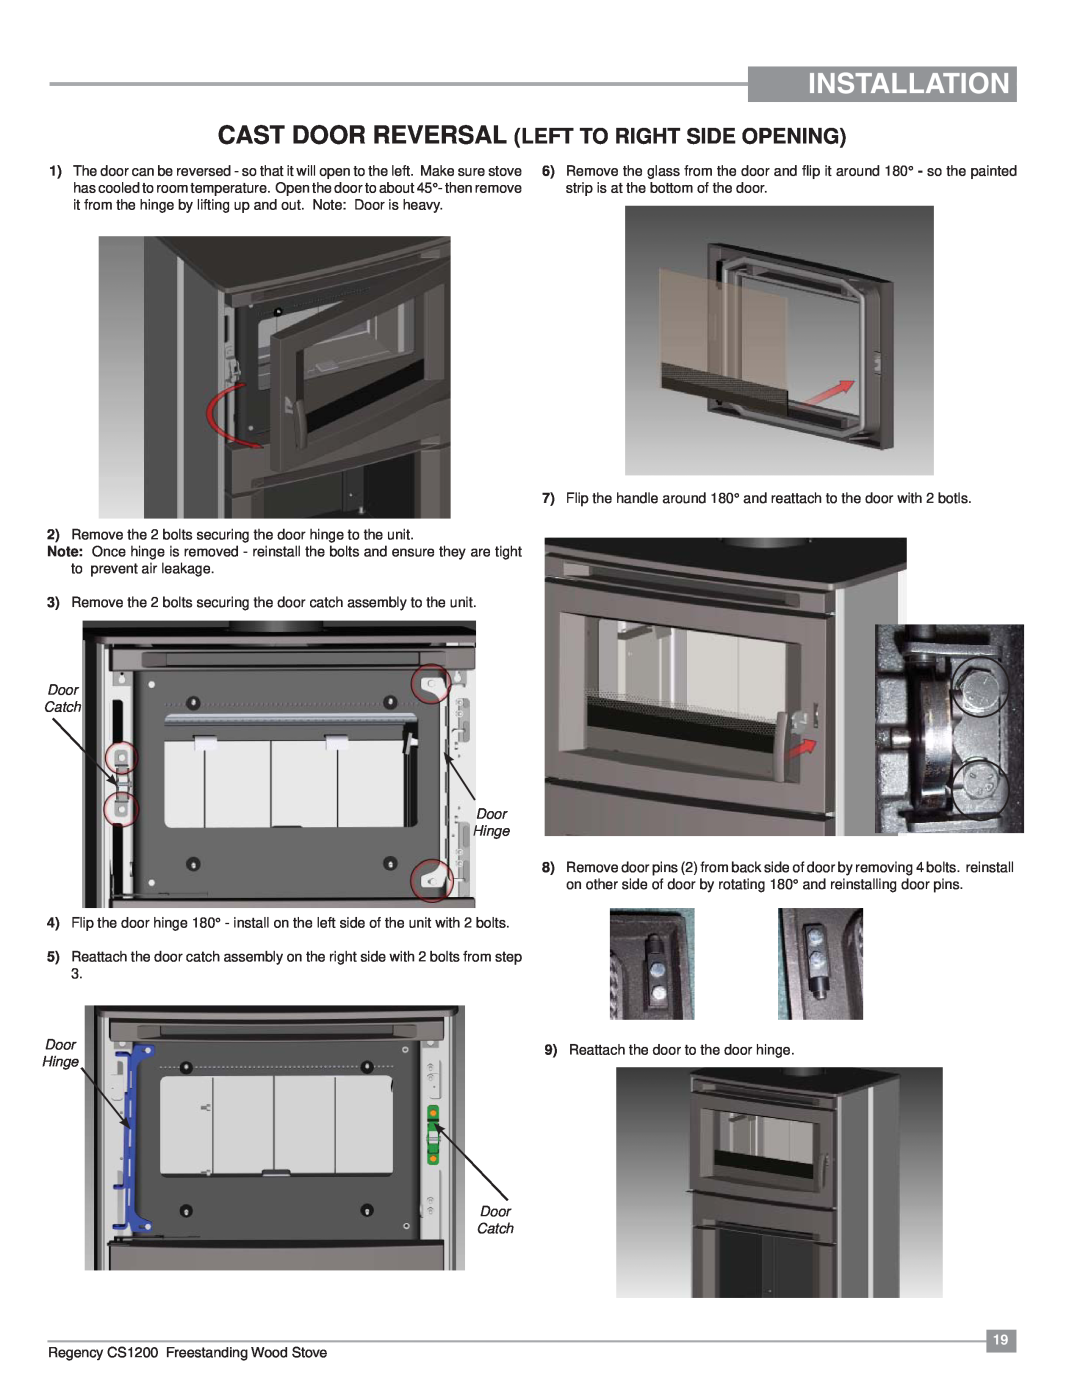 Regency CS1200 installation manual Installation, Cast Door Reversal Left To Right Side Opening, Door Catch Door Hinge 